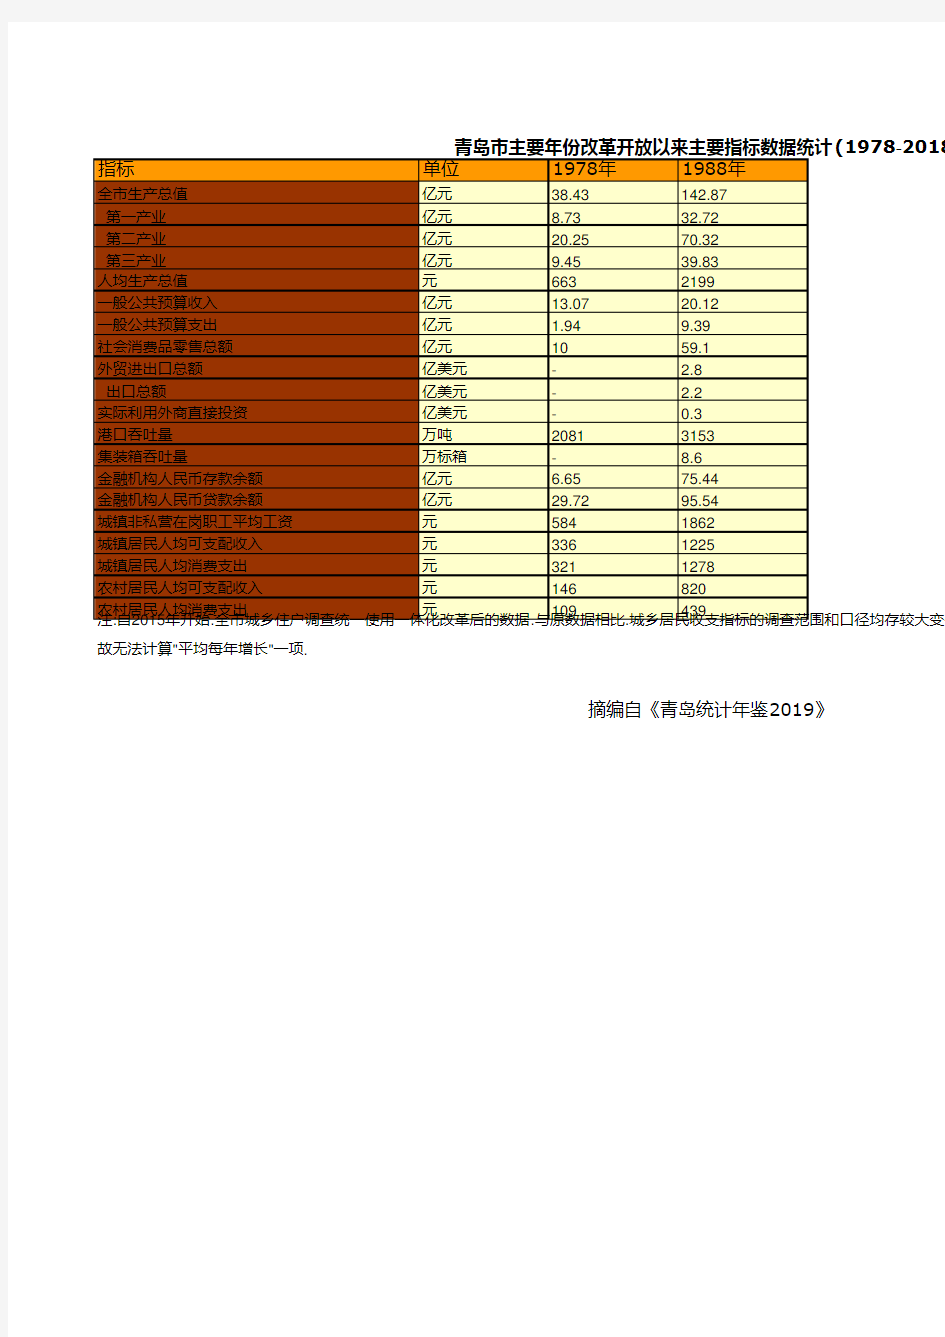 青岛市统计年鉴社会经济发展指标数据：主要年份改革开放以来主要指标数据统计(1978-2018)